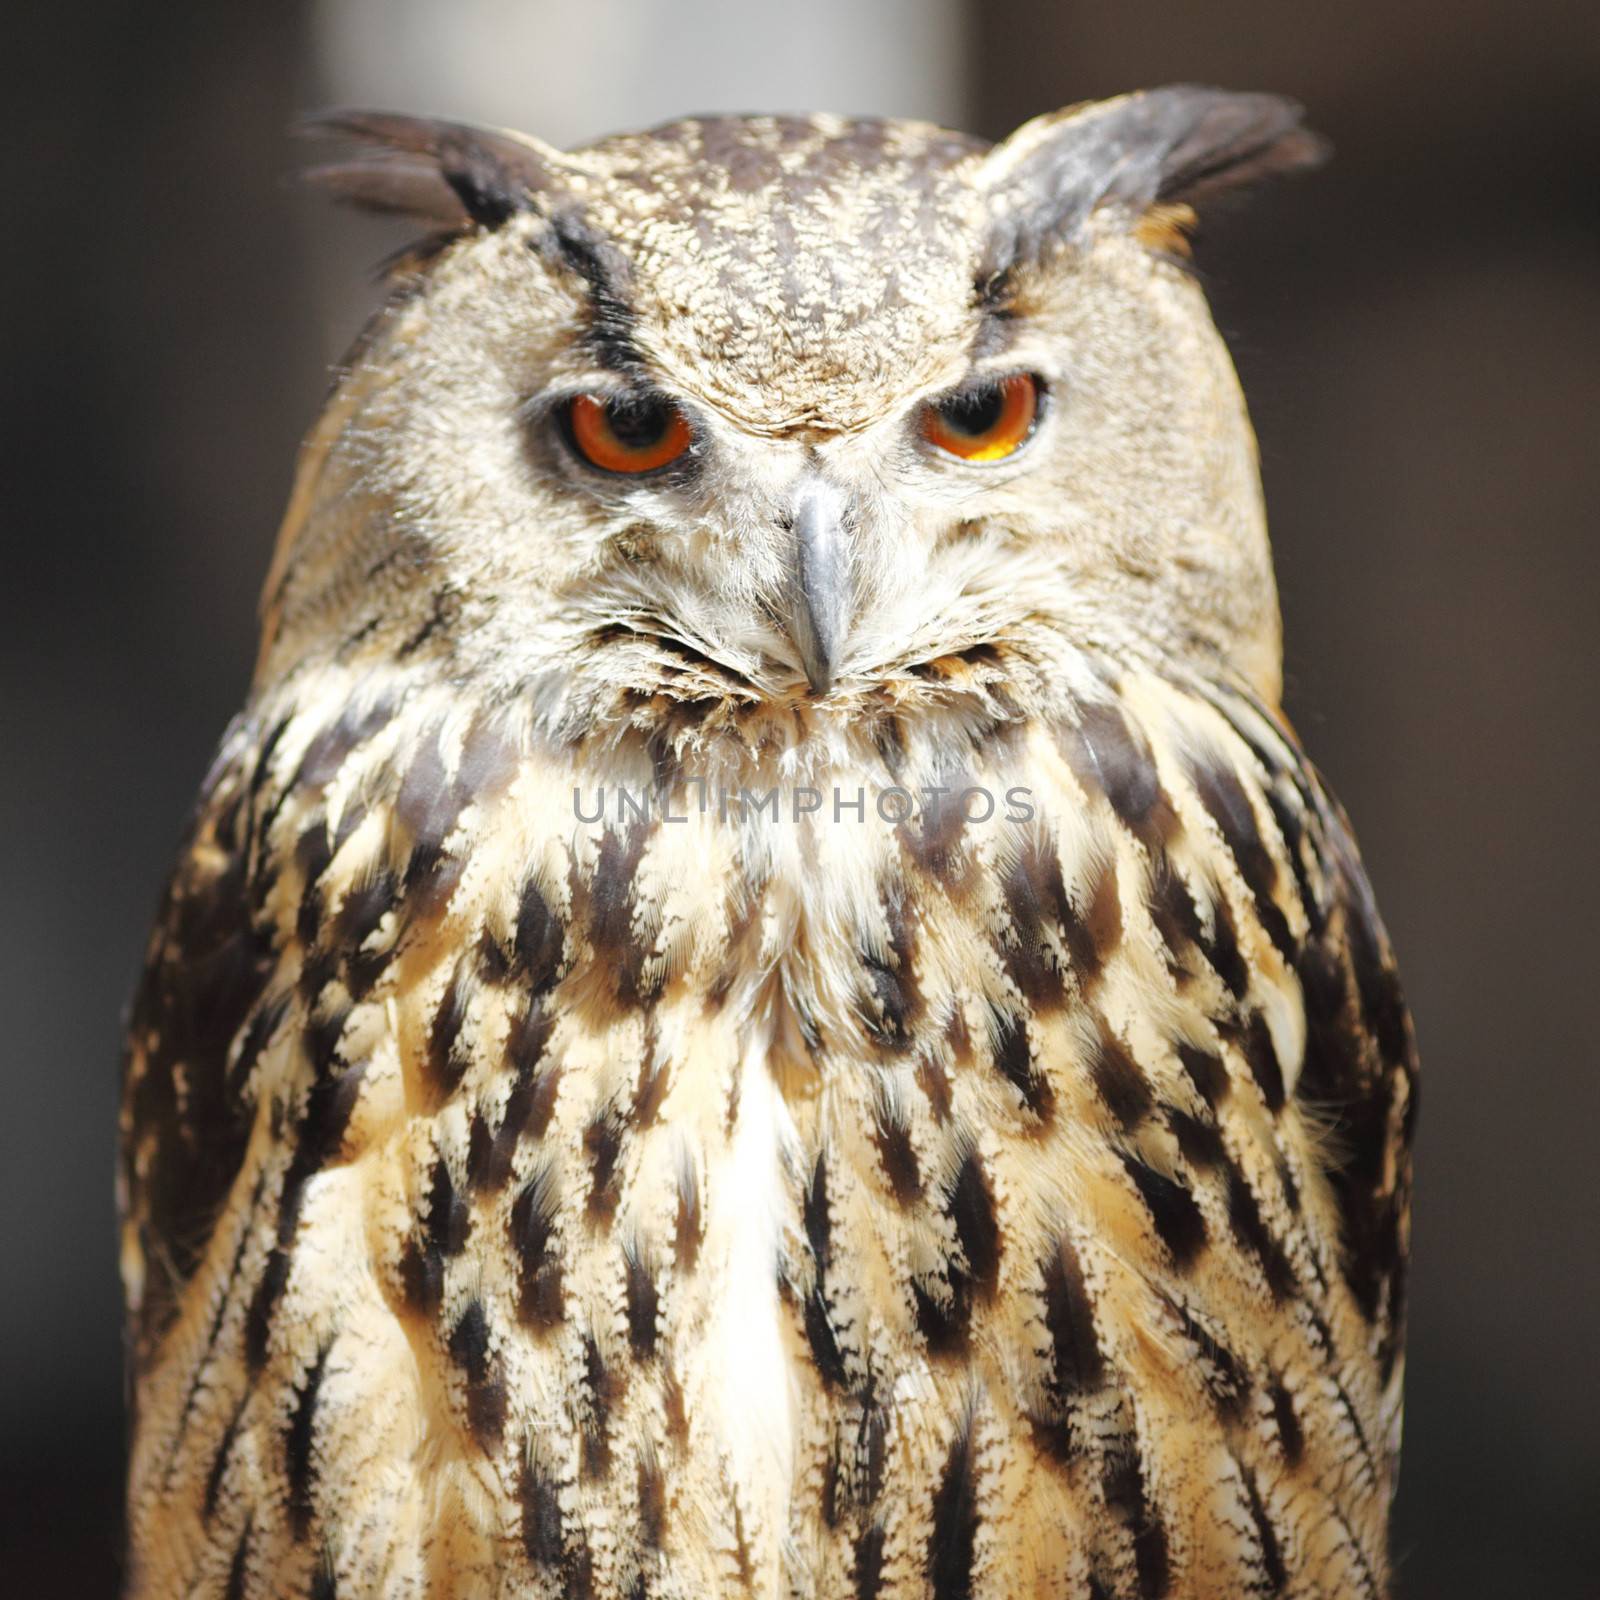 Long-eared owl by Yellowj